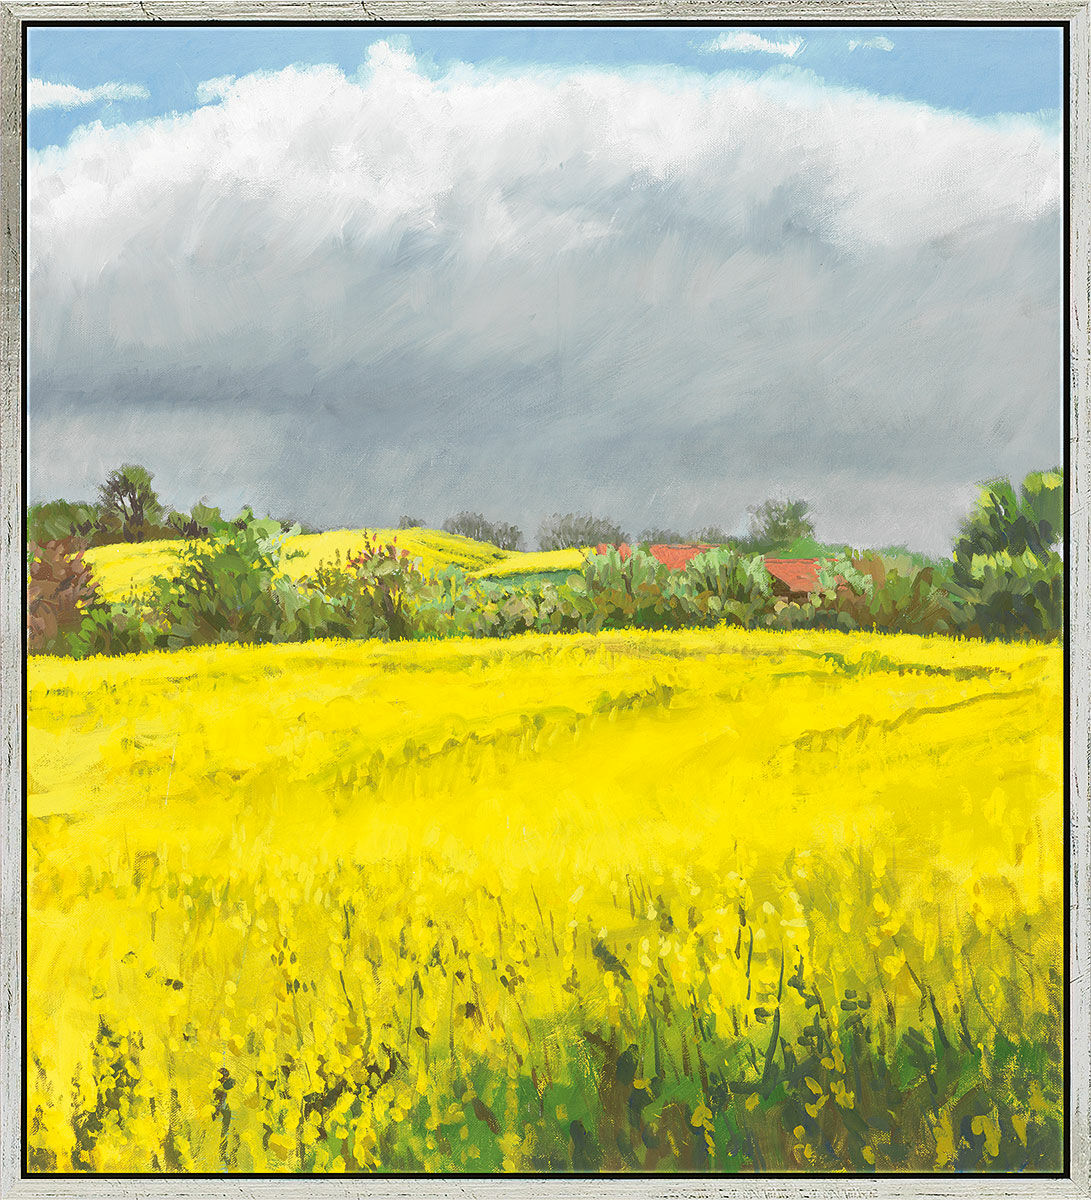 Beeld "Summer Day - It's About to Rain" (2010), ingelijst von Frank Suplie